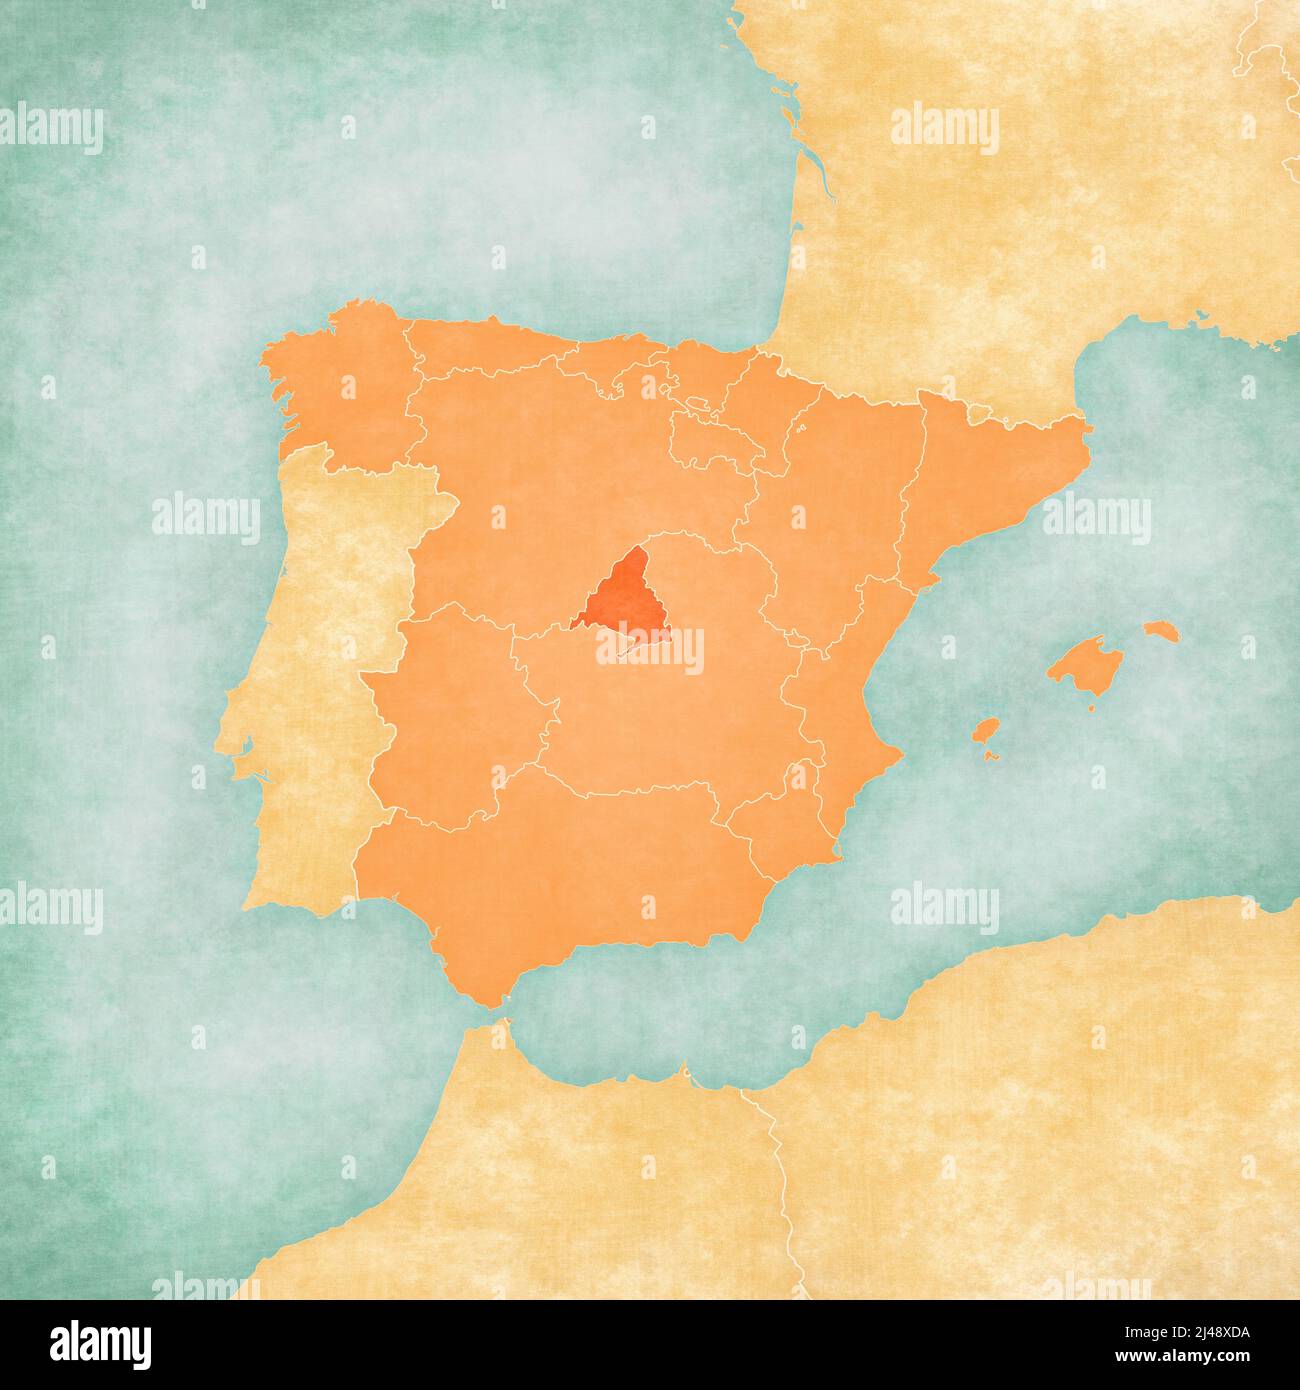 Madrid (Spagna) sulla mappa della penisola iberica in morbido grunge e vintage stile su carta vecchia. Foto Stock